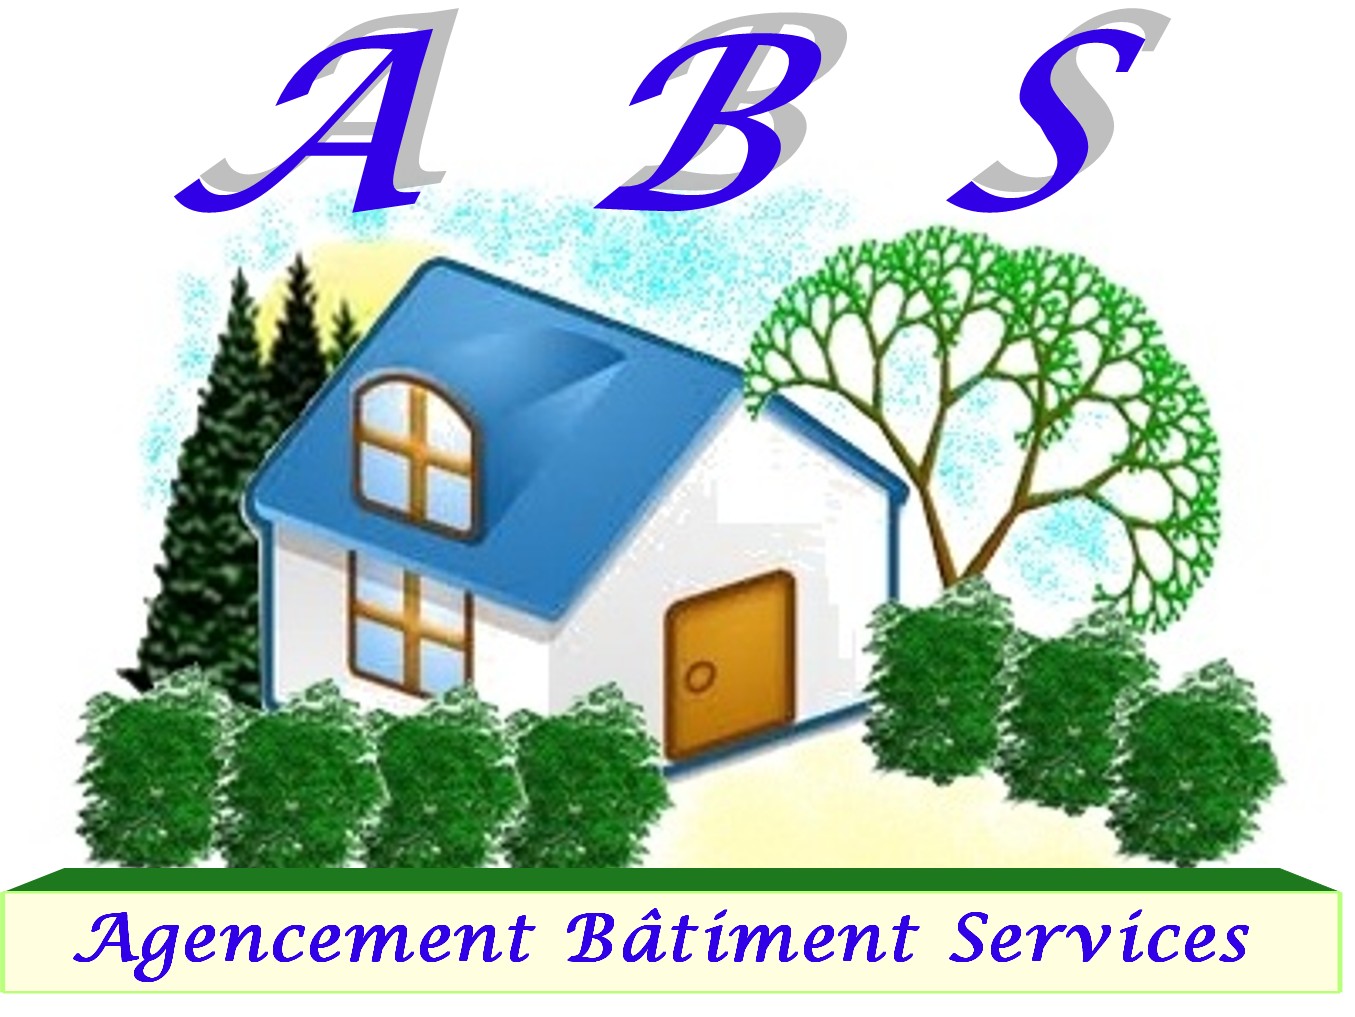 AGENCEMENT BATIMENT SERVICES